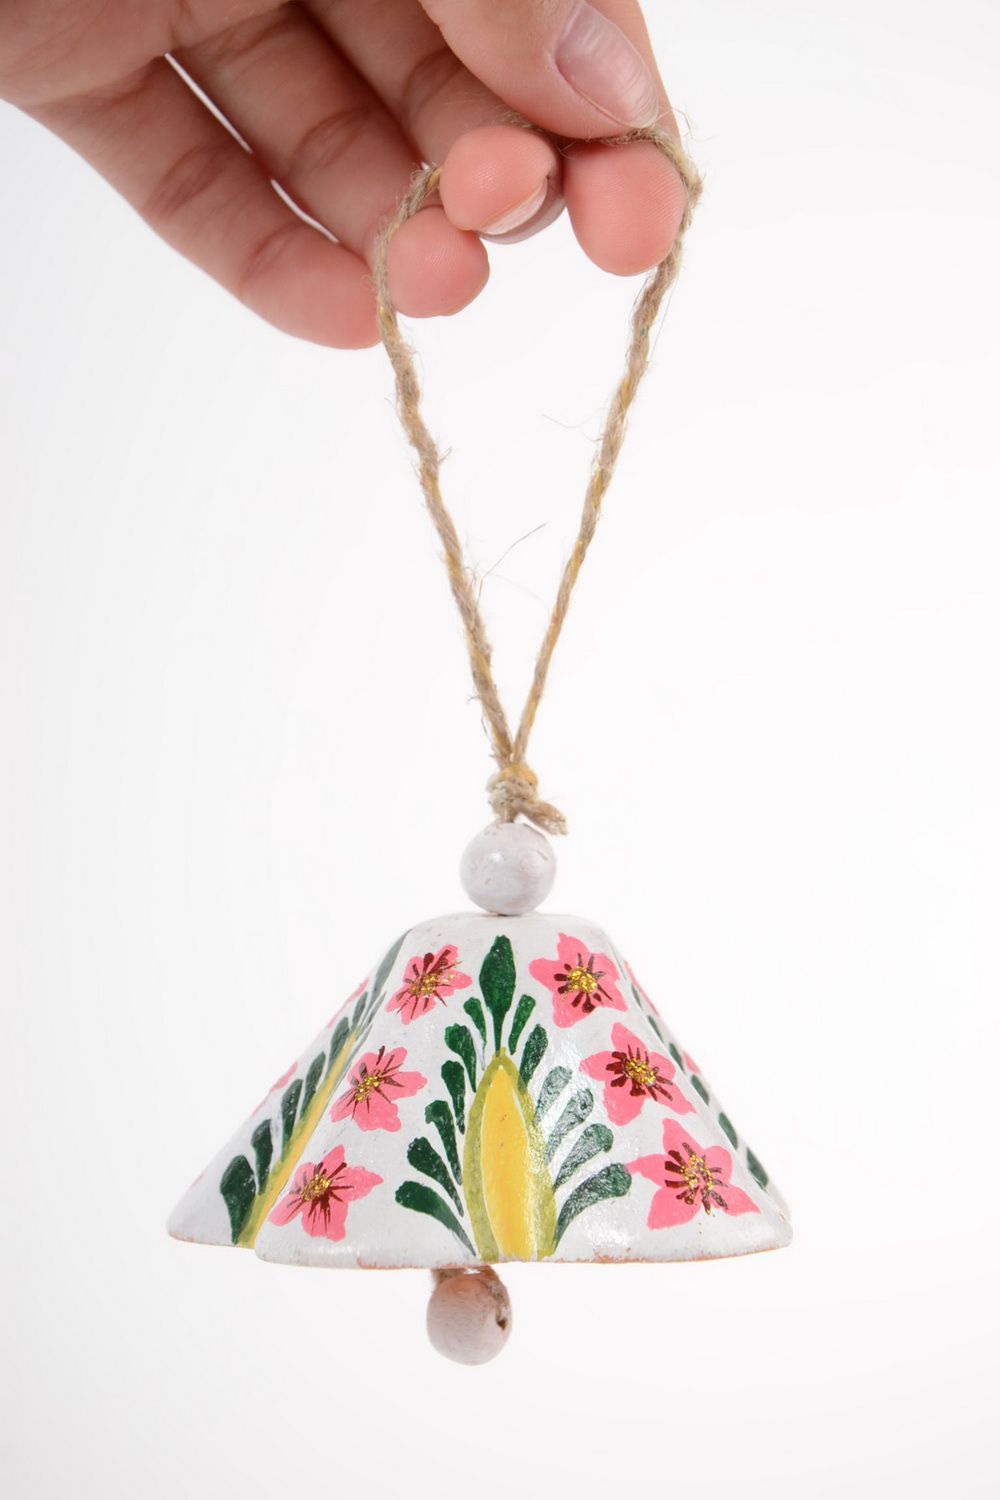 Глиняный колокольчик расписанный акрилом белый с цветами ручной работы фото 2